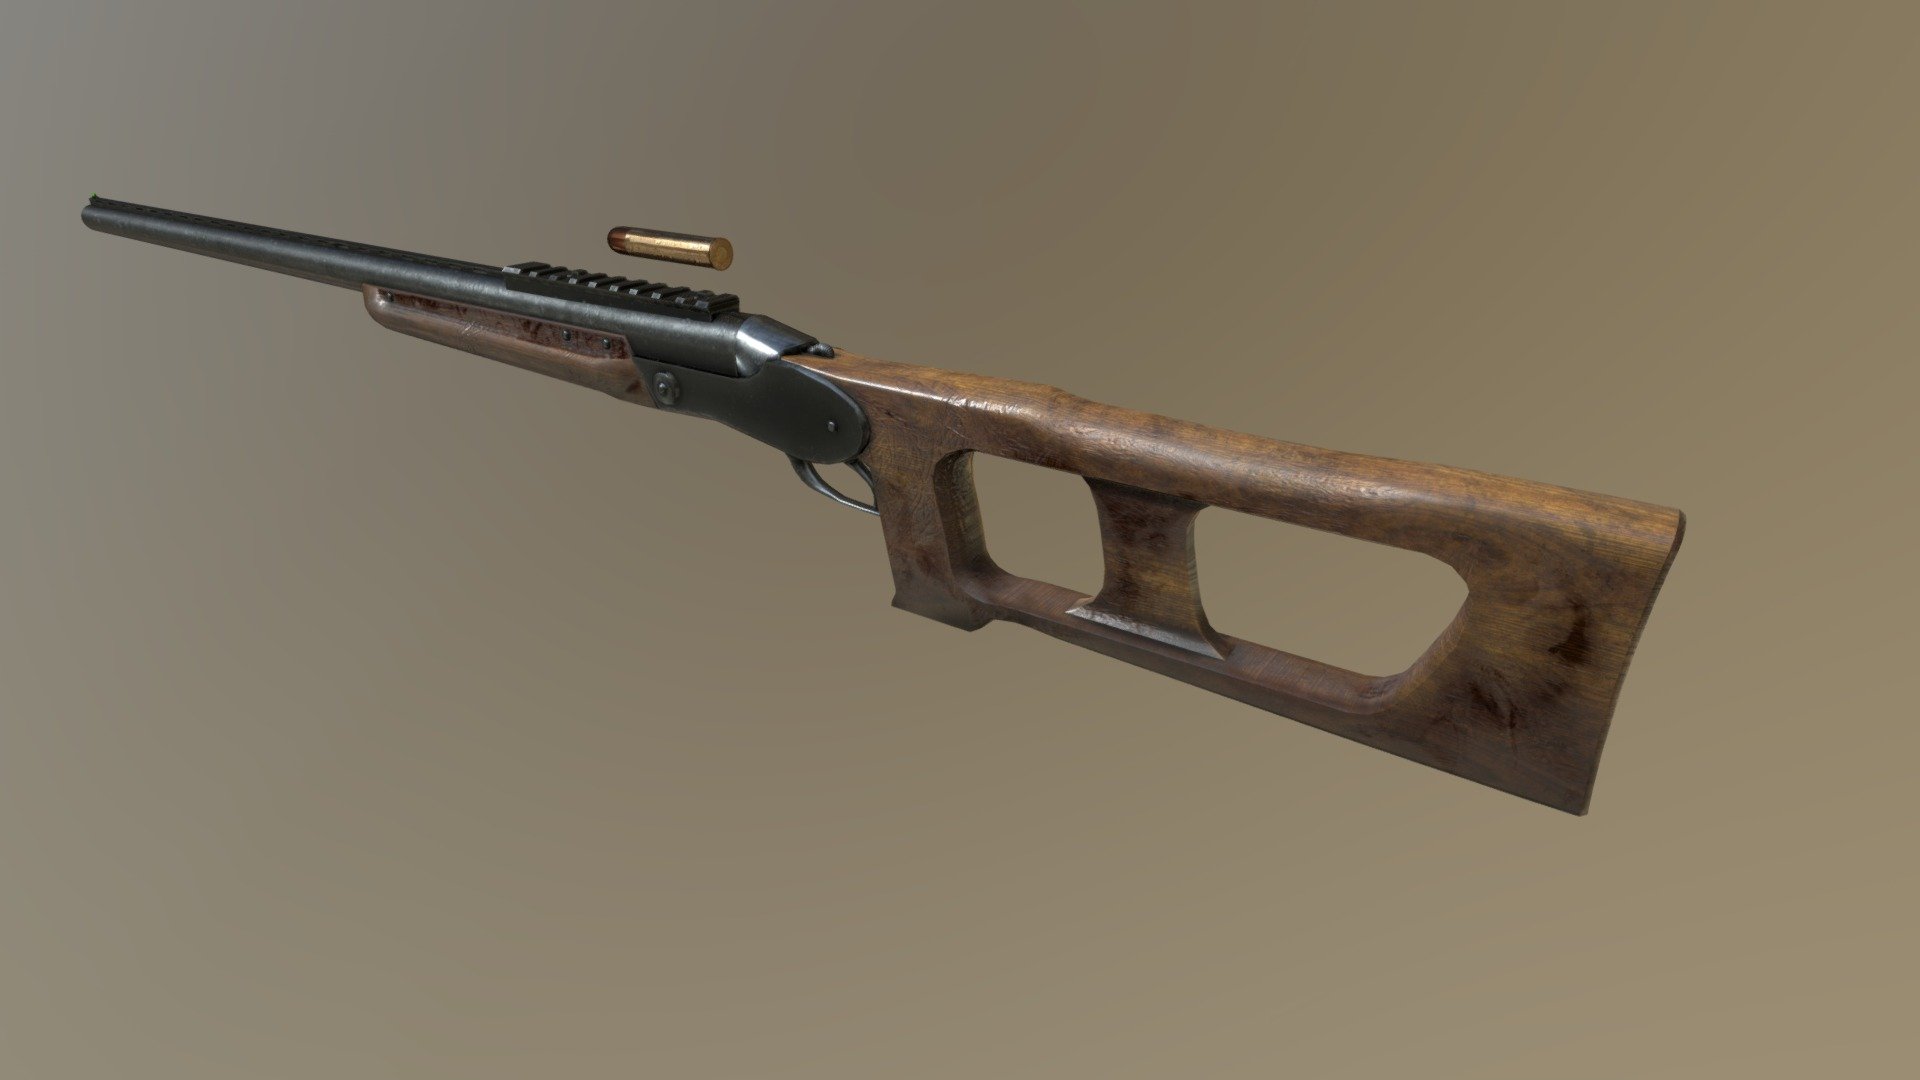 700 Nitro Express Hunting Gun